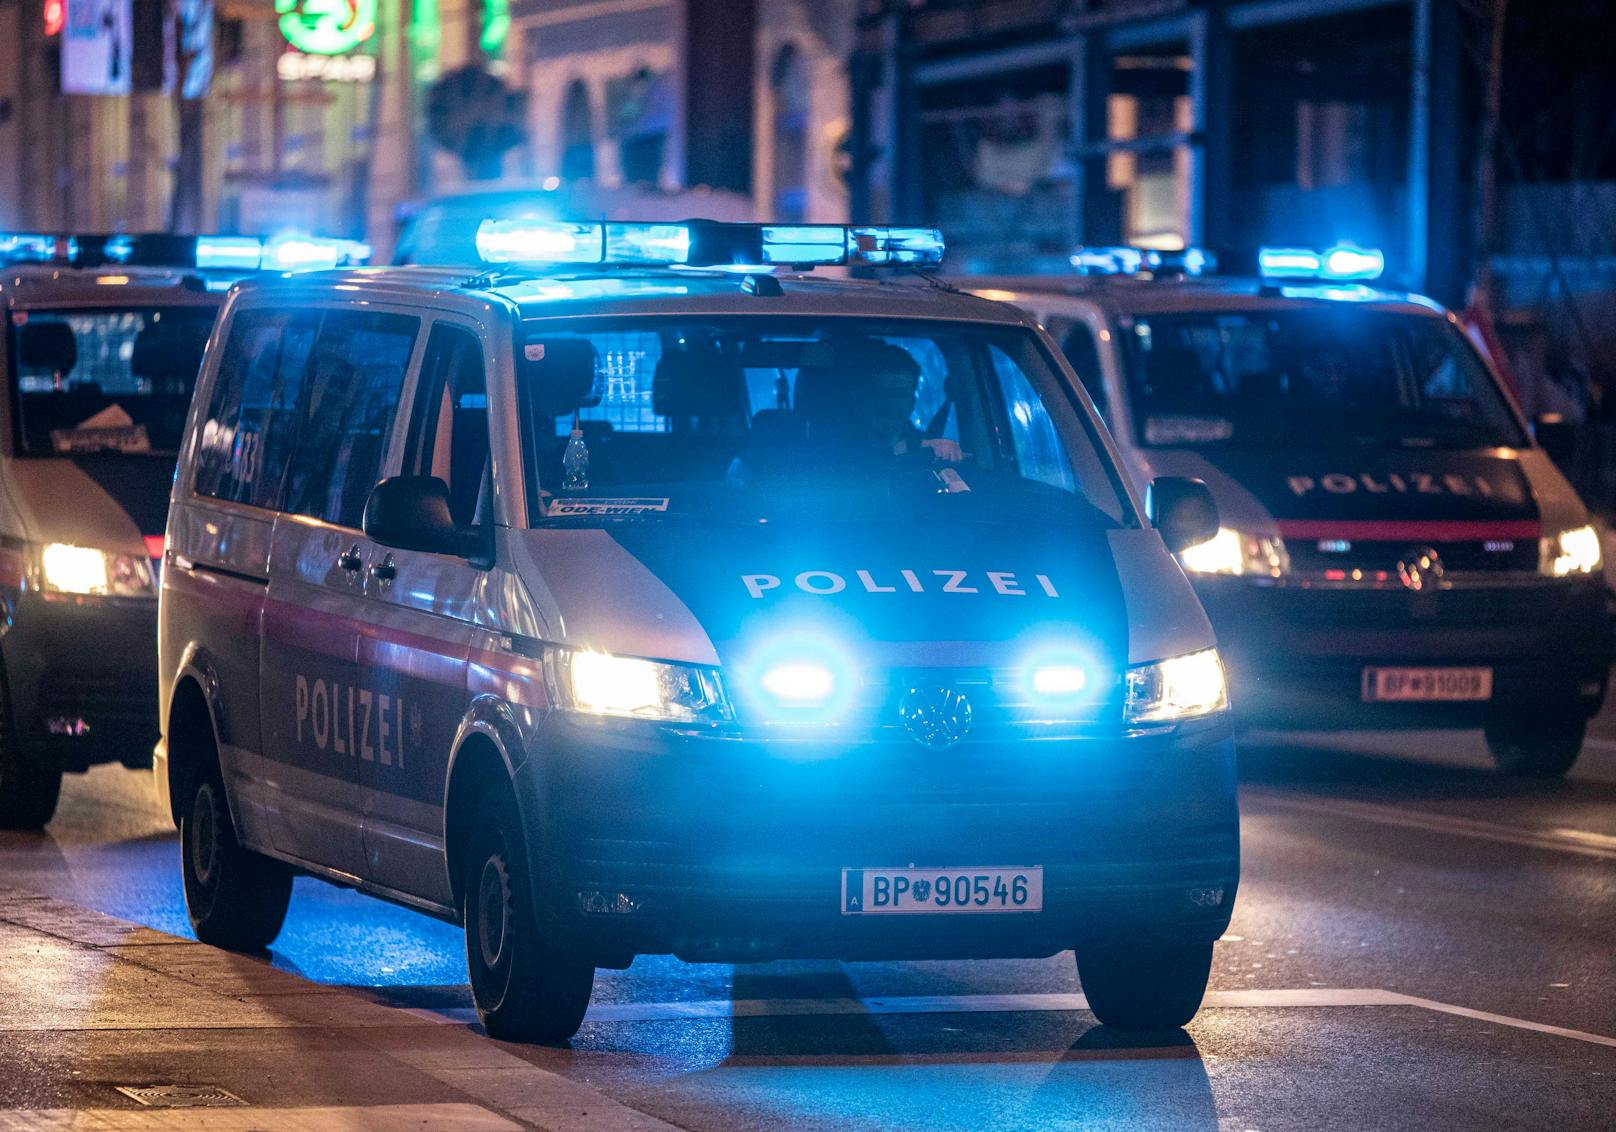 In der Nacht auf Donnerstag kam es zu einem Polizeieinsatz in Wien-Favoriten. Symbolbild.